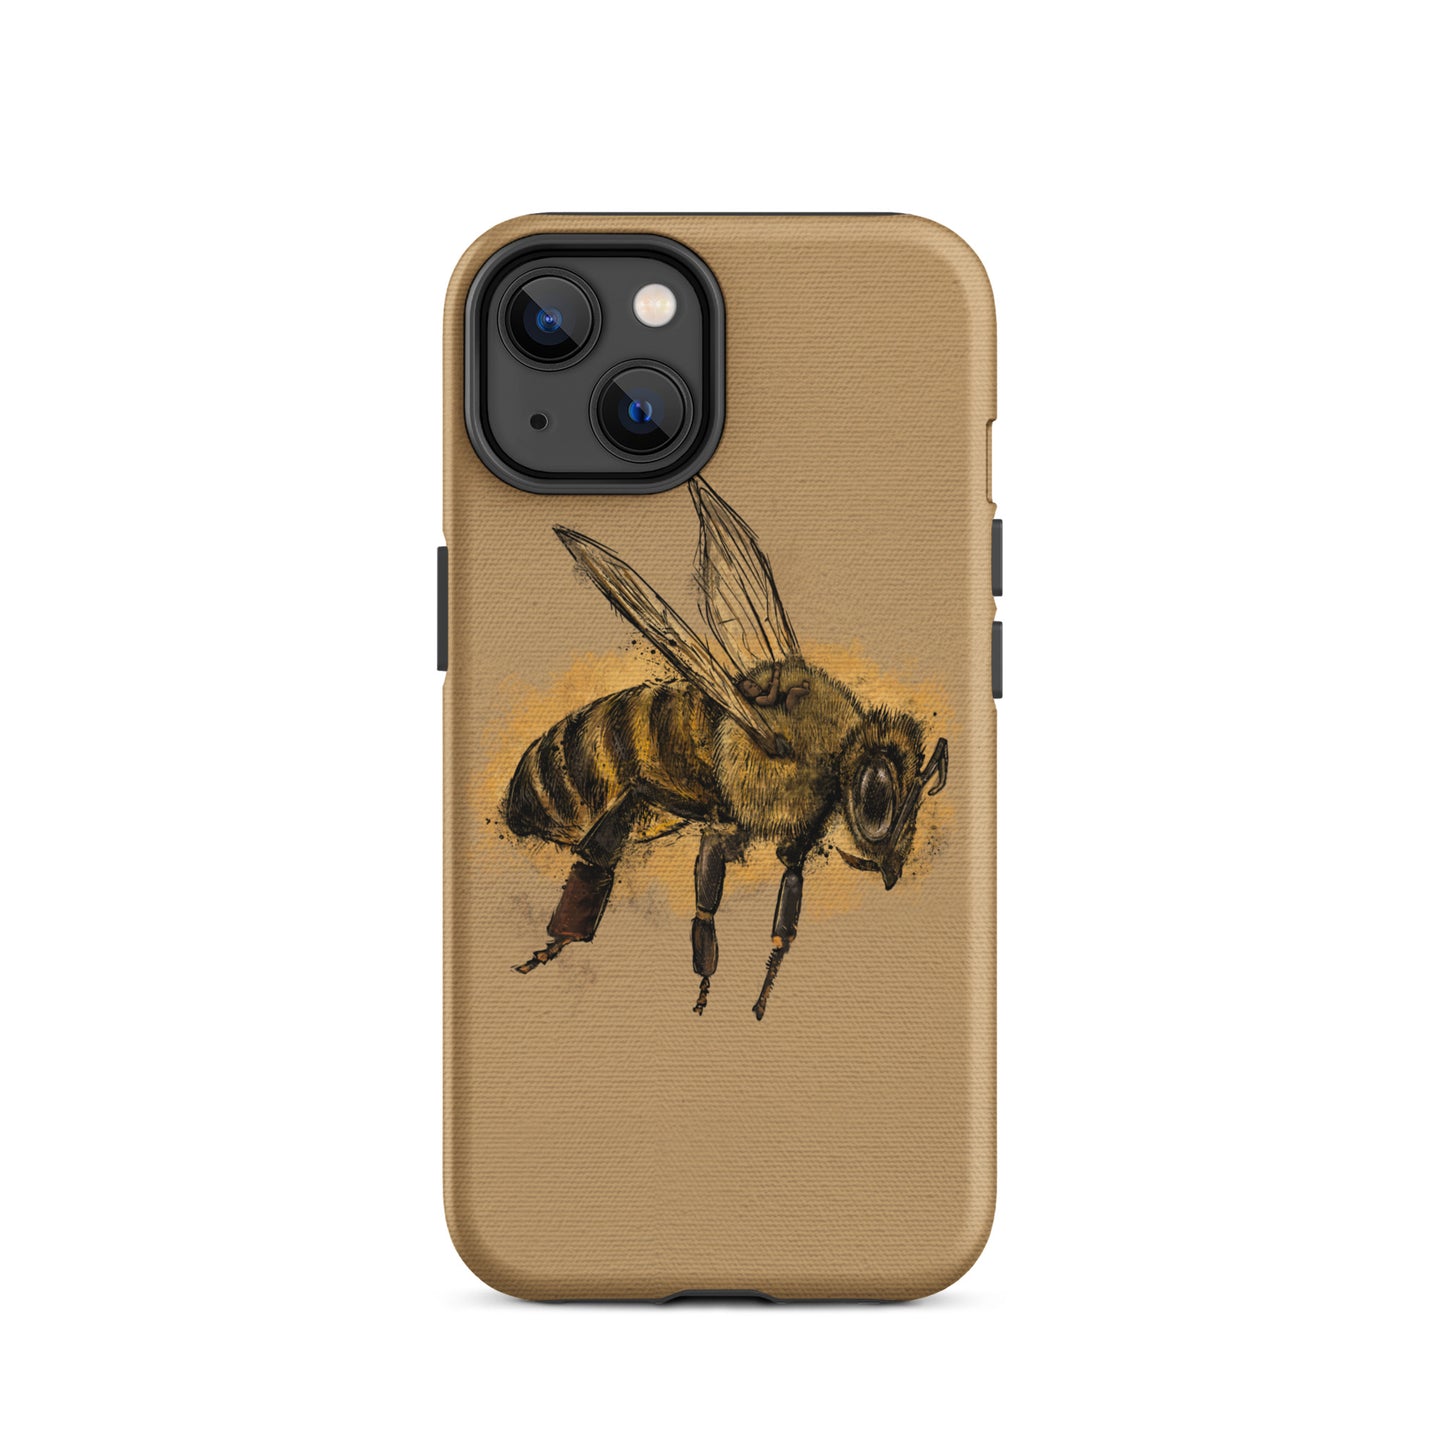 BEE PHONE CASE